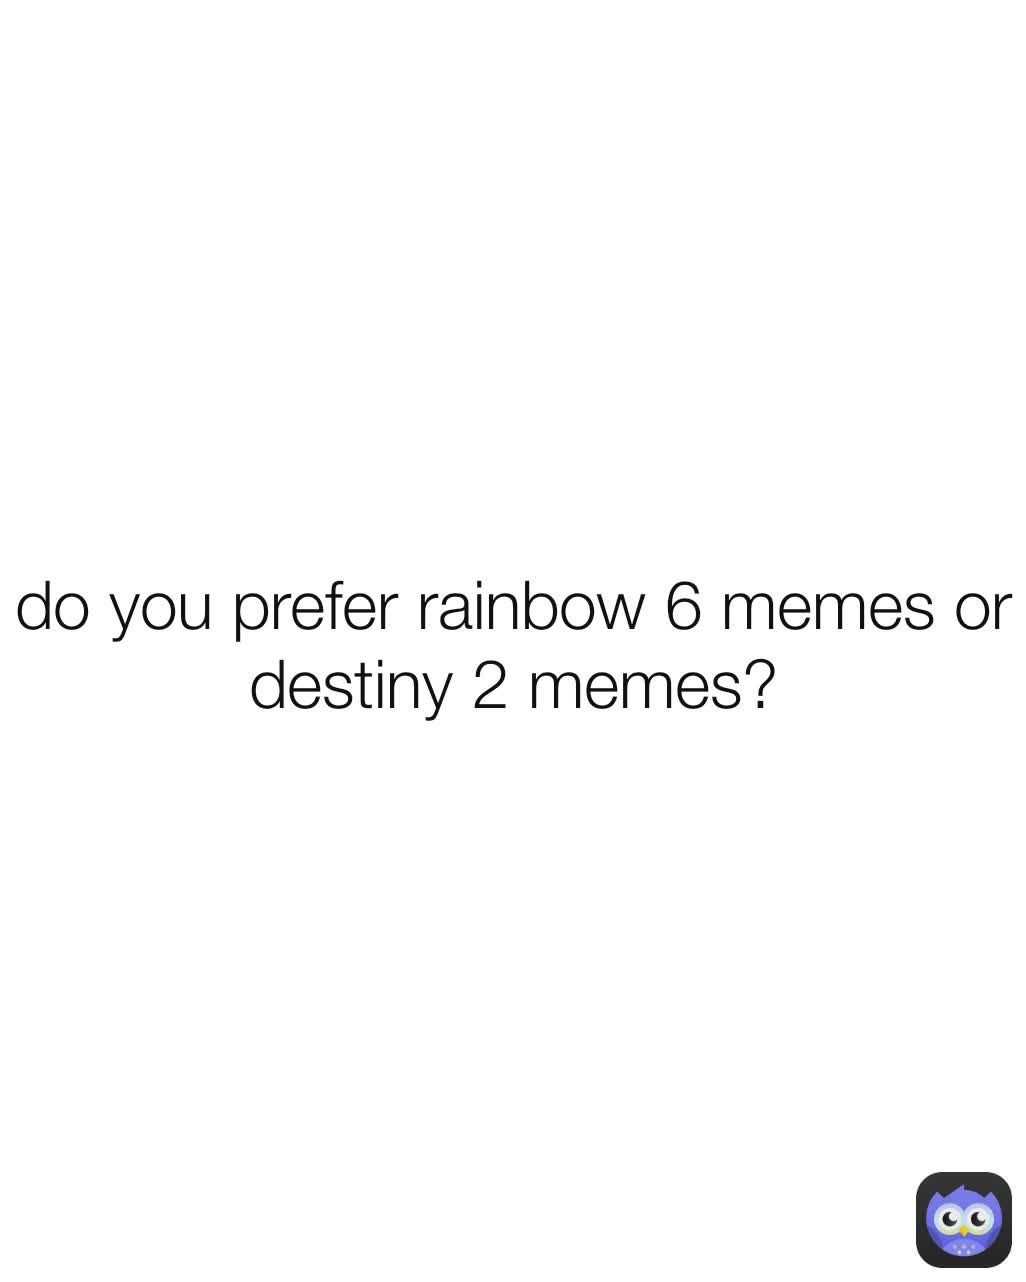 do you prefer rainbow 6 memes or destiny 2 memes?